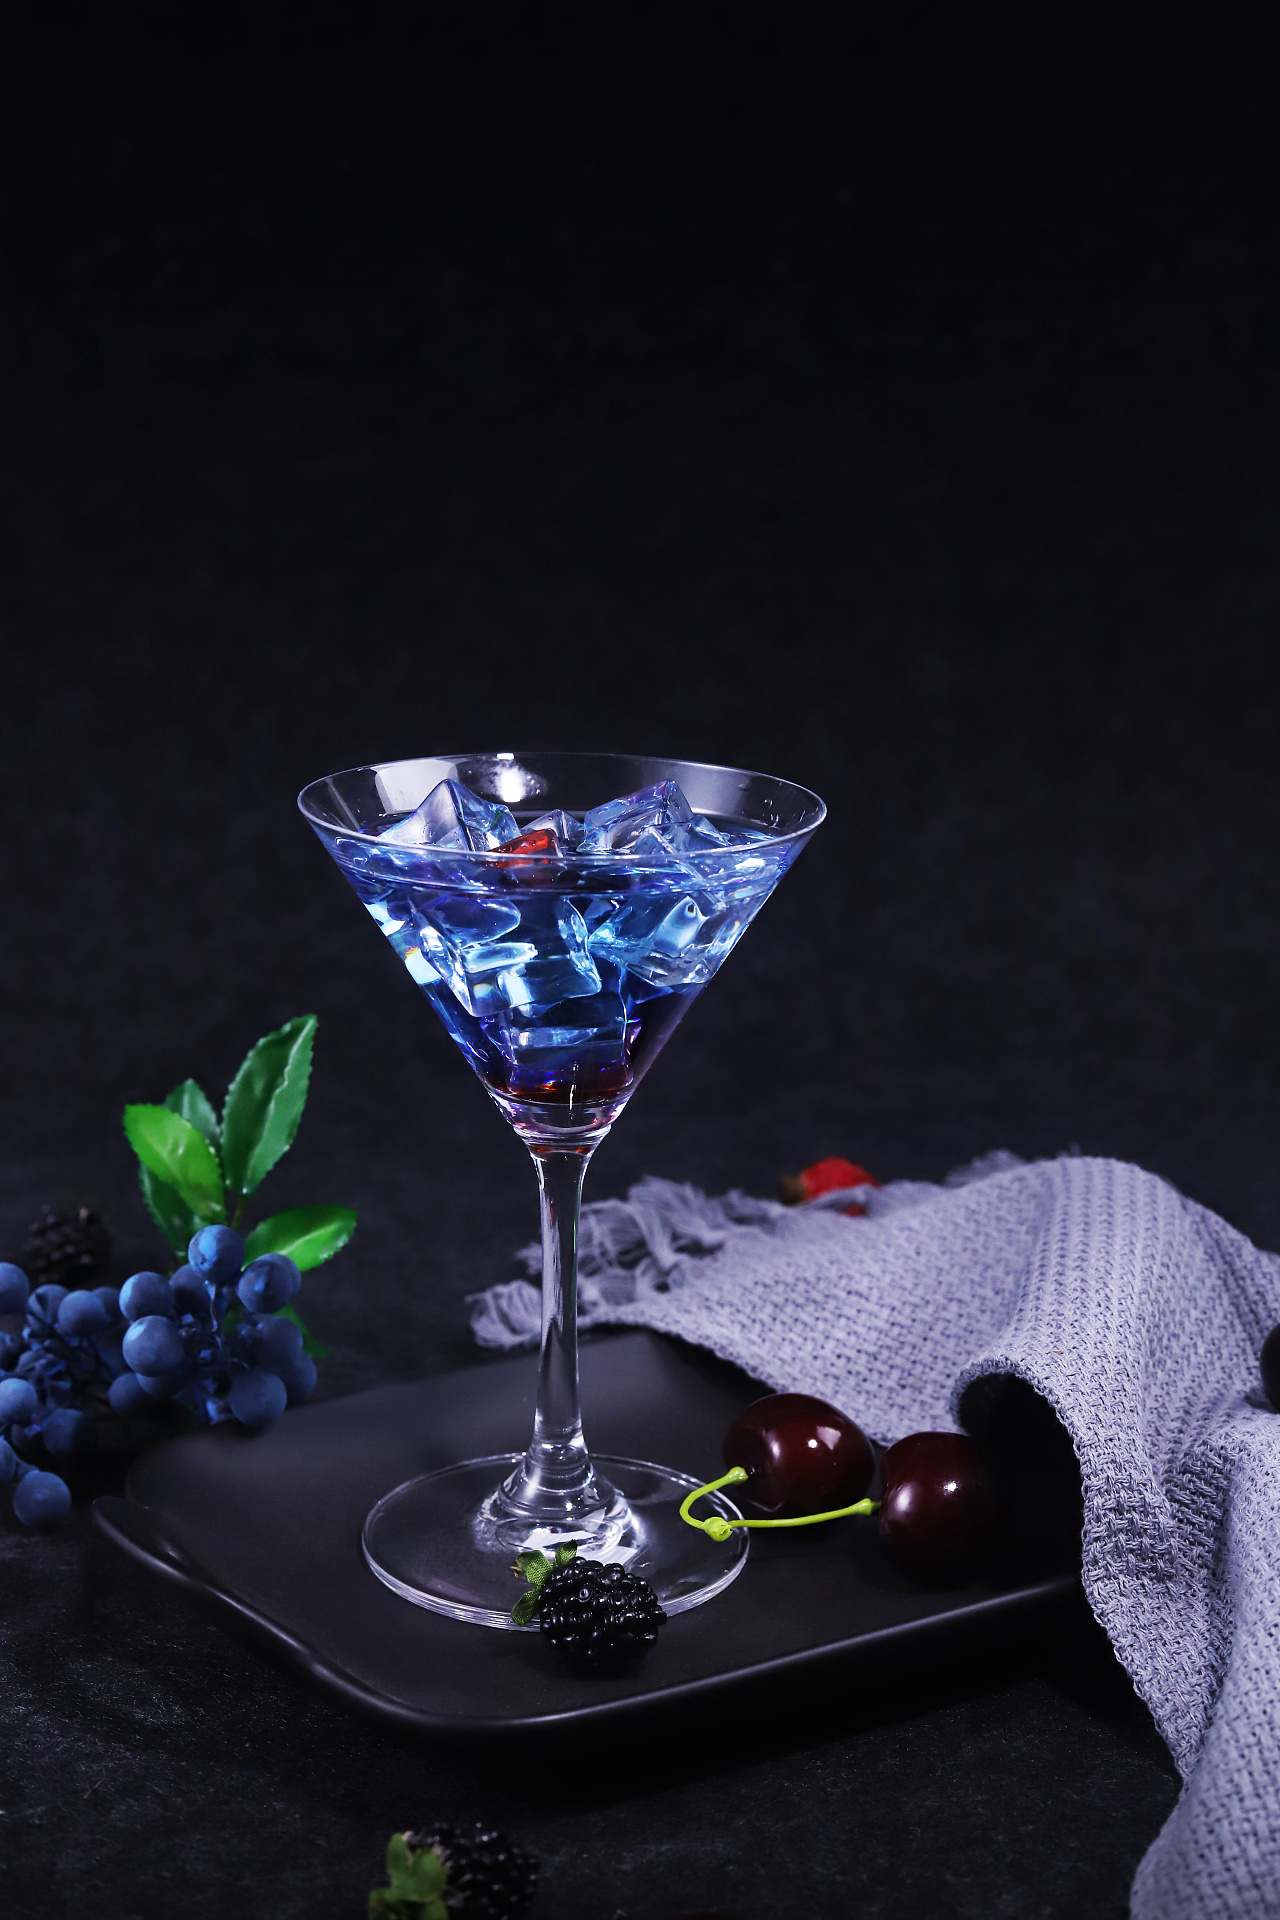 蓝色鸡尾酒curacao 库存图片. 图片 包括有 关闭, 甜甜, 成份, 石灰, 热带, 柠檬, 糖浆 - 19659069